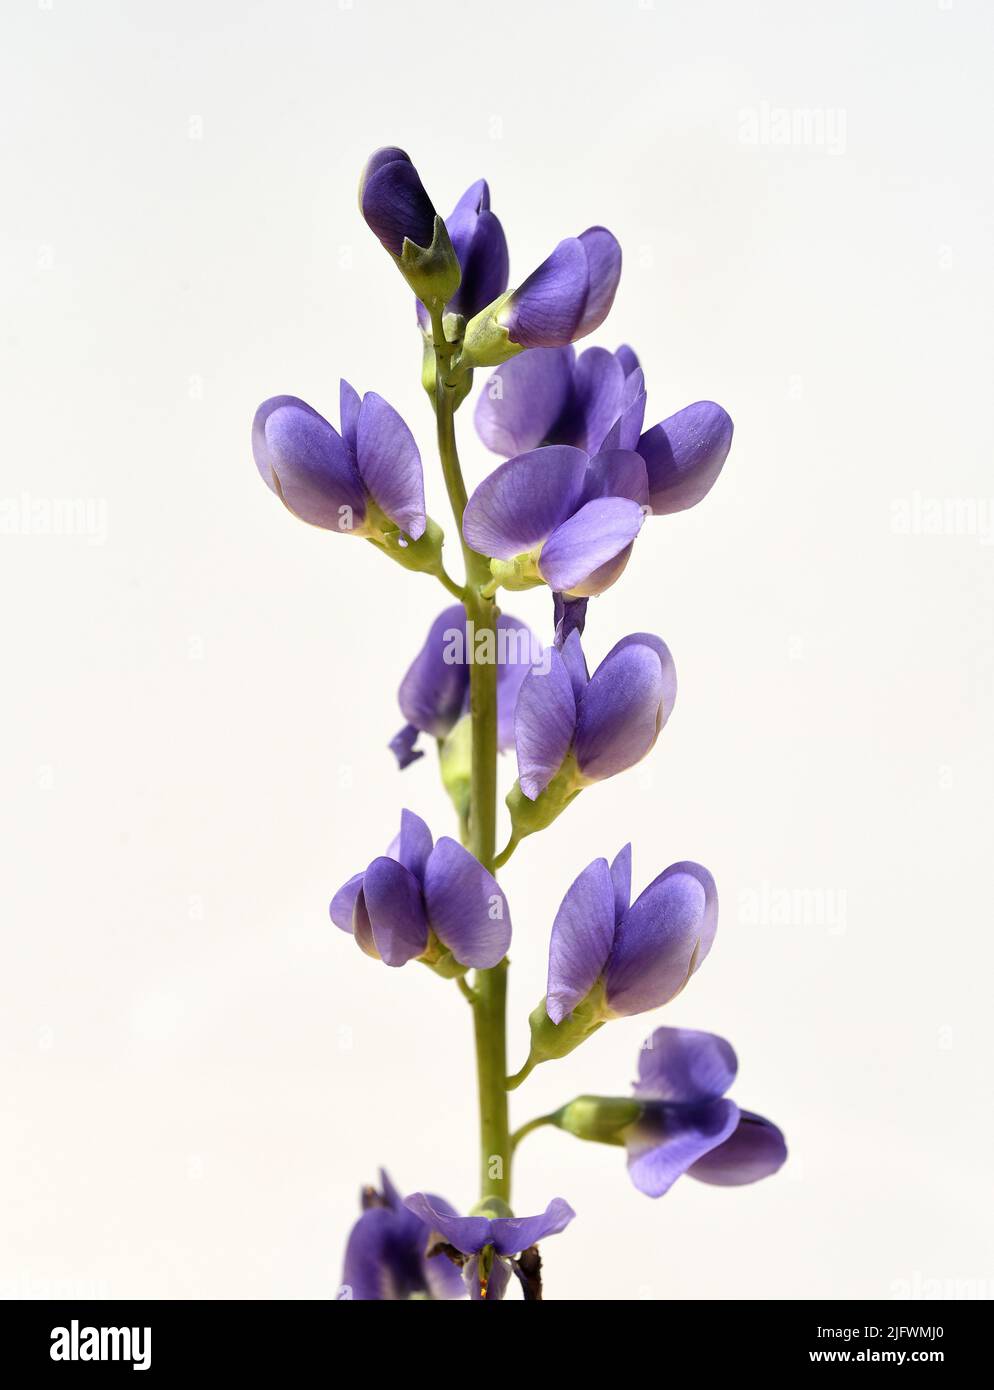 Faerberhuelse, Baptisia tinctoria, ist eine wichtige Heilpflanze mit blauen Blueten und wird viel in der Medizin verwendet. Sie ist eine Staude und ge Stock Photo